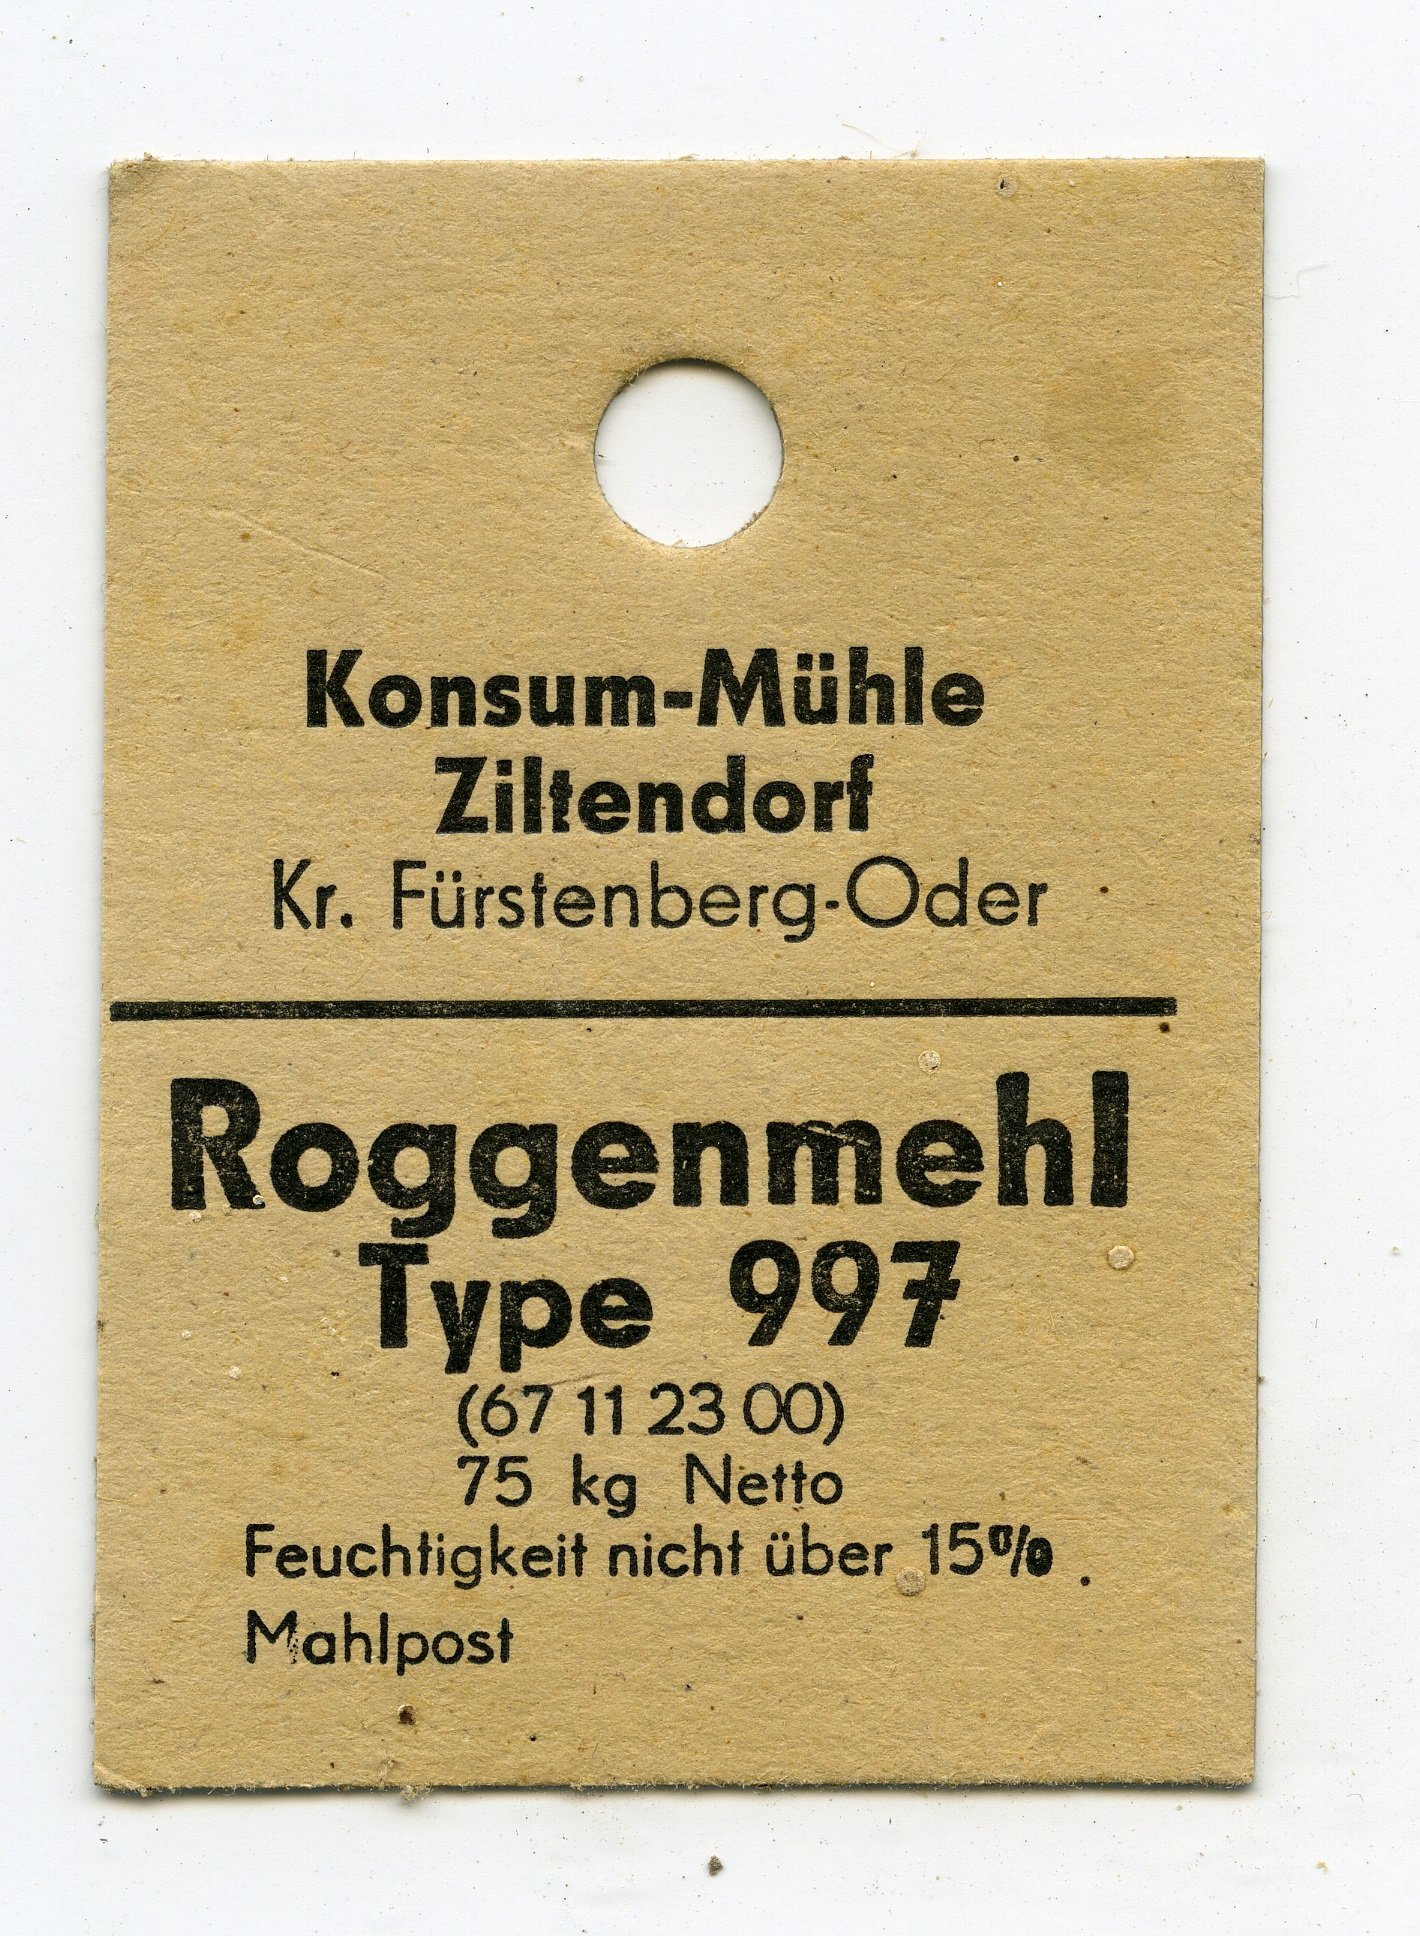 Konum-Mühle Ziltendorf Roggenmehl Type 997 (Historische Mühle von Sanssouci CC BY-NC-SA)